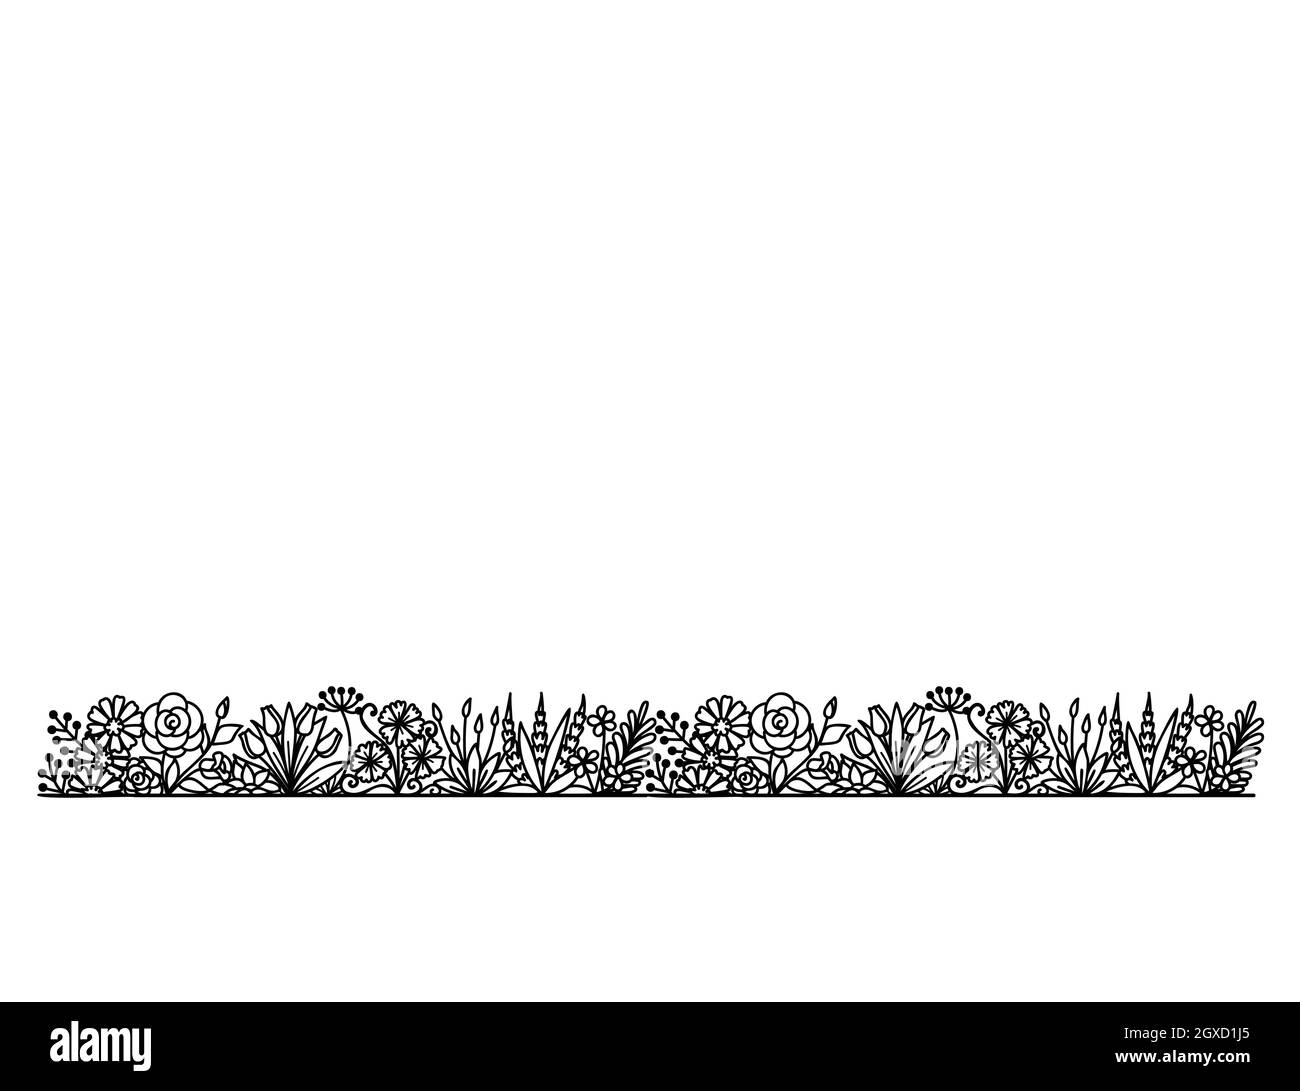 Linea di fiori ripetibile, silhouette nera di giardino floreale su sfondo bianco per stampa, incisione o colorazione. Illustrazione vettoriale. Illustrazione Vettoriale